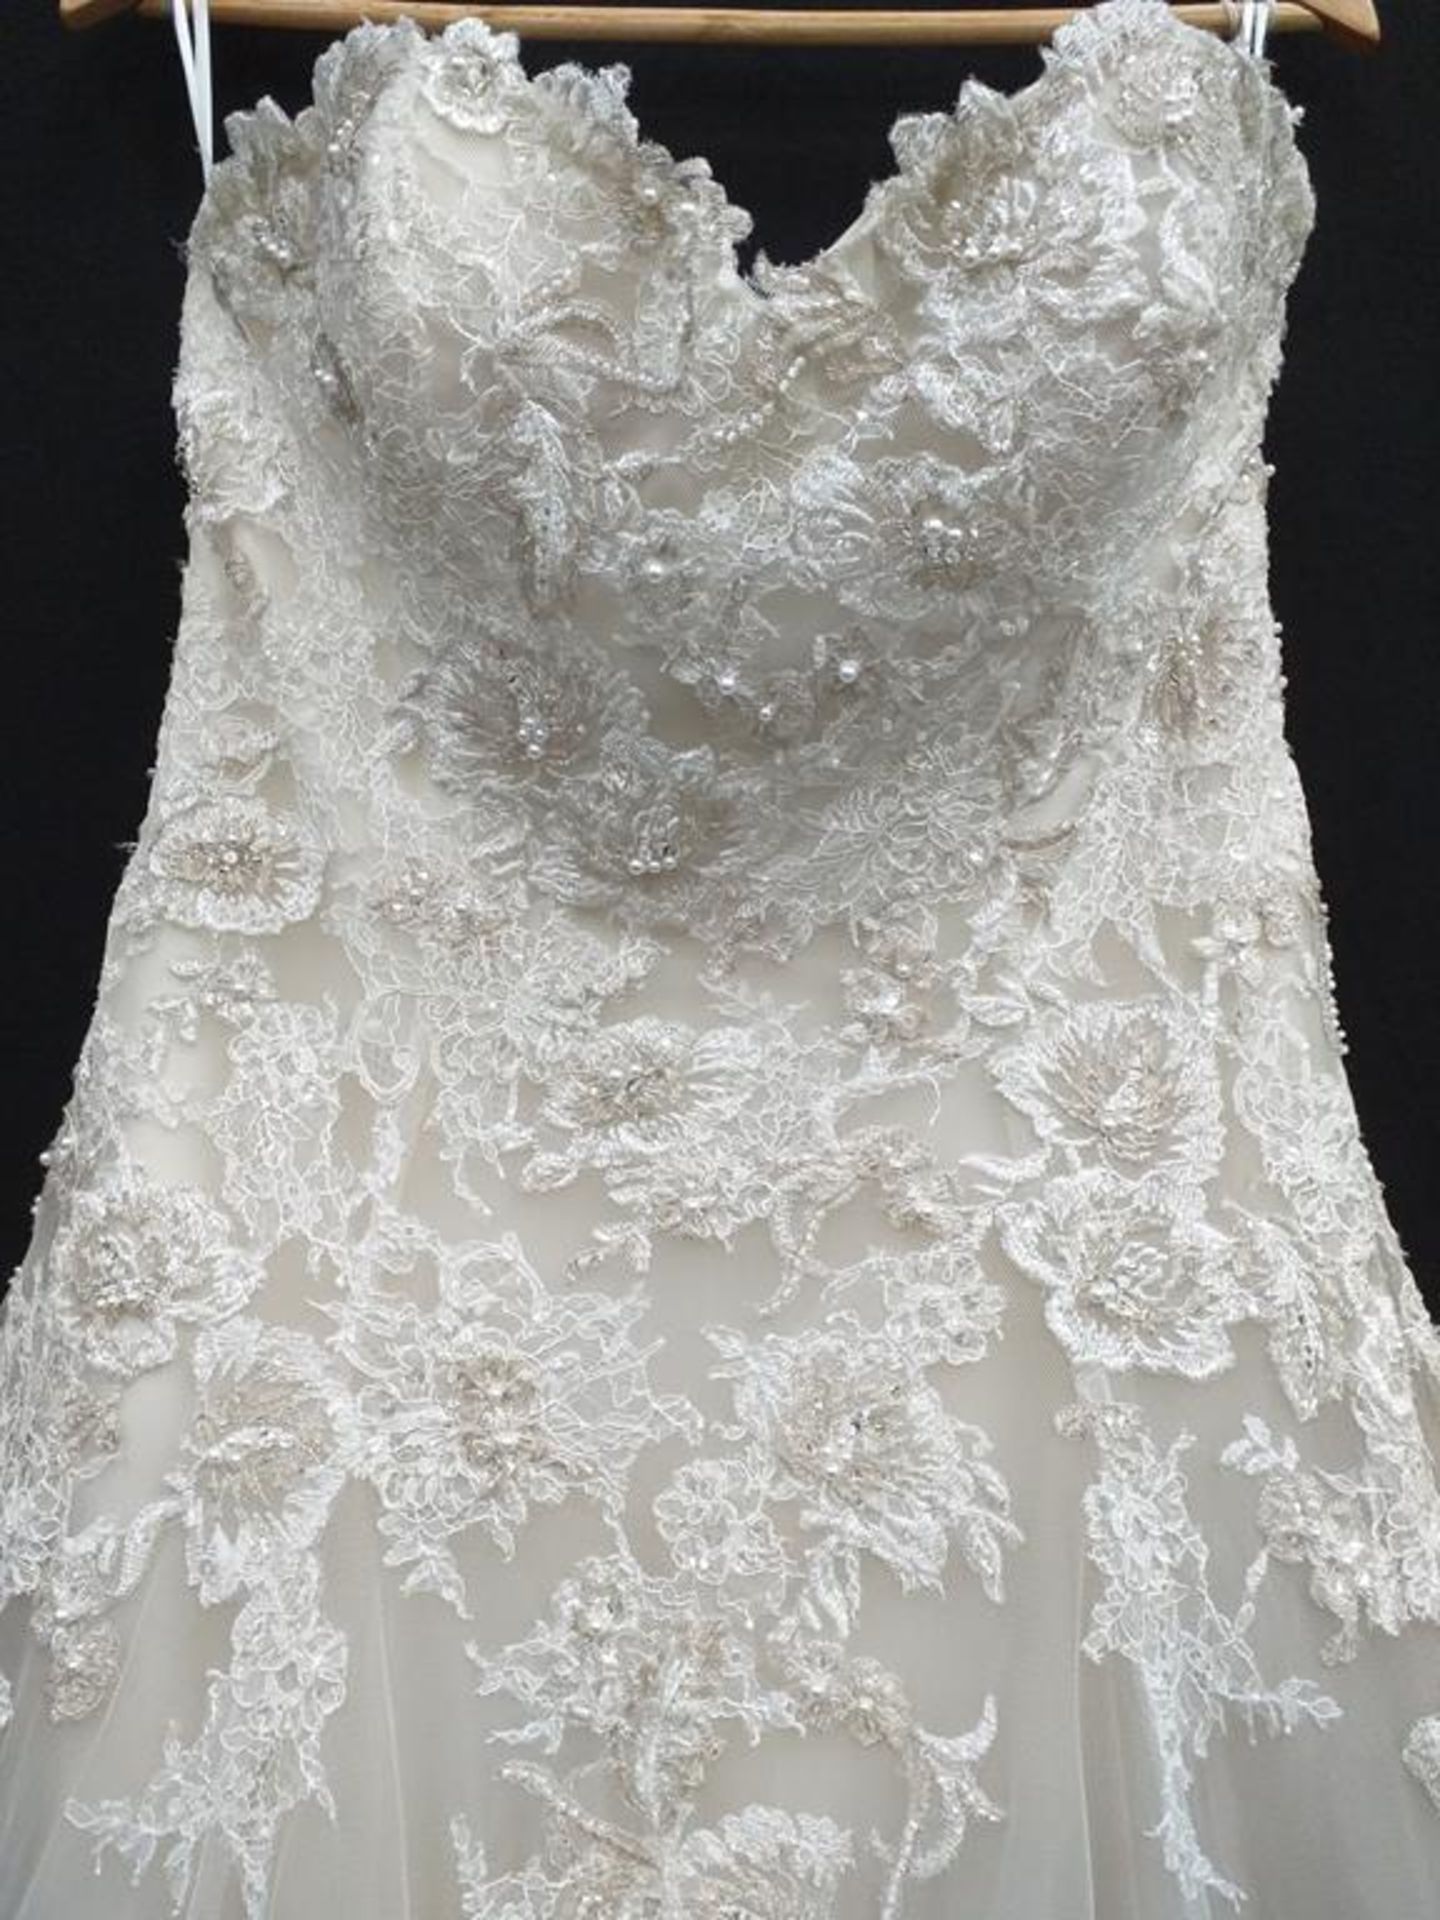 Le Papillion Toronto wedding dress - Image 2 of 9